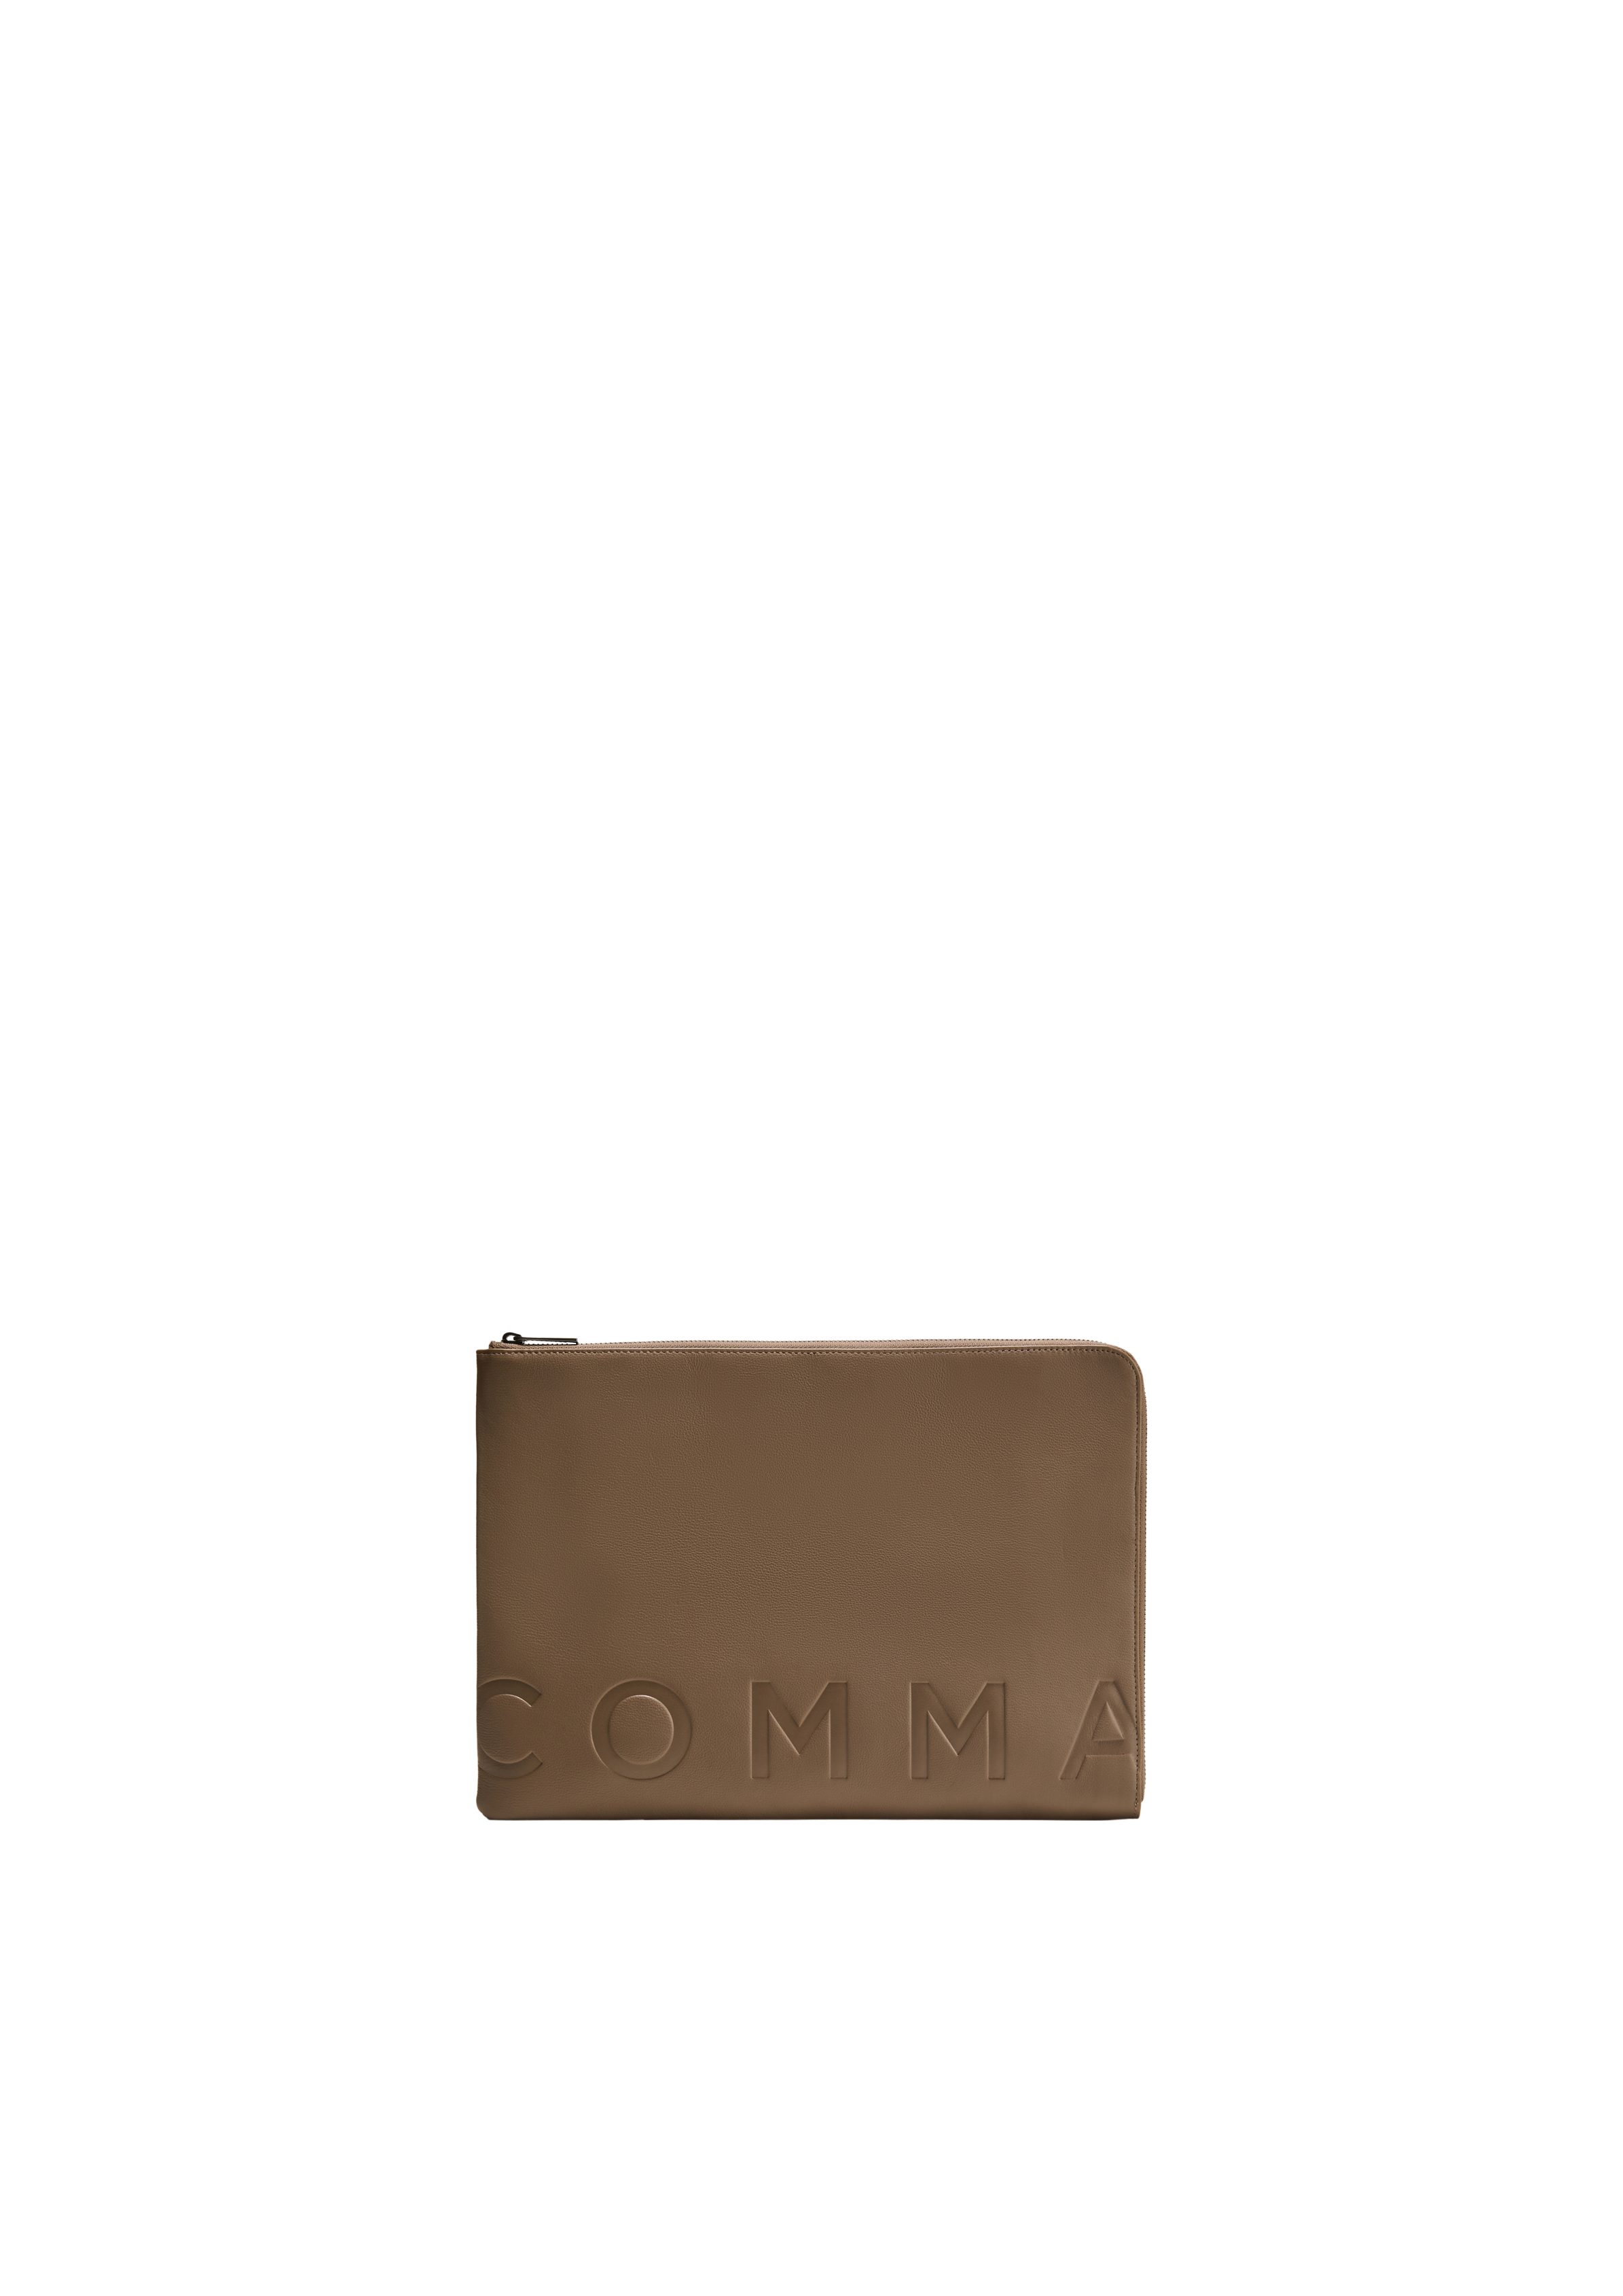 Logo aus Laptop-Tasche Comma braun Leder, Hochwertige Tragetasche